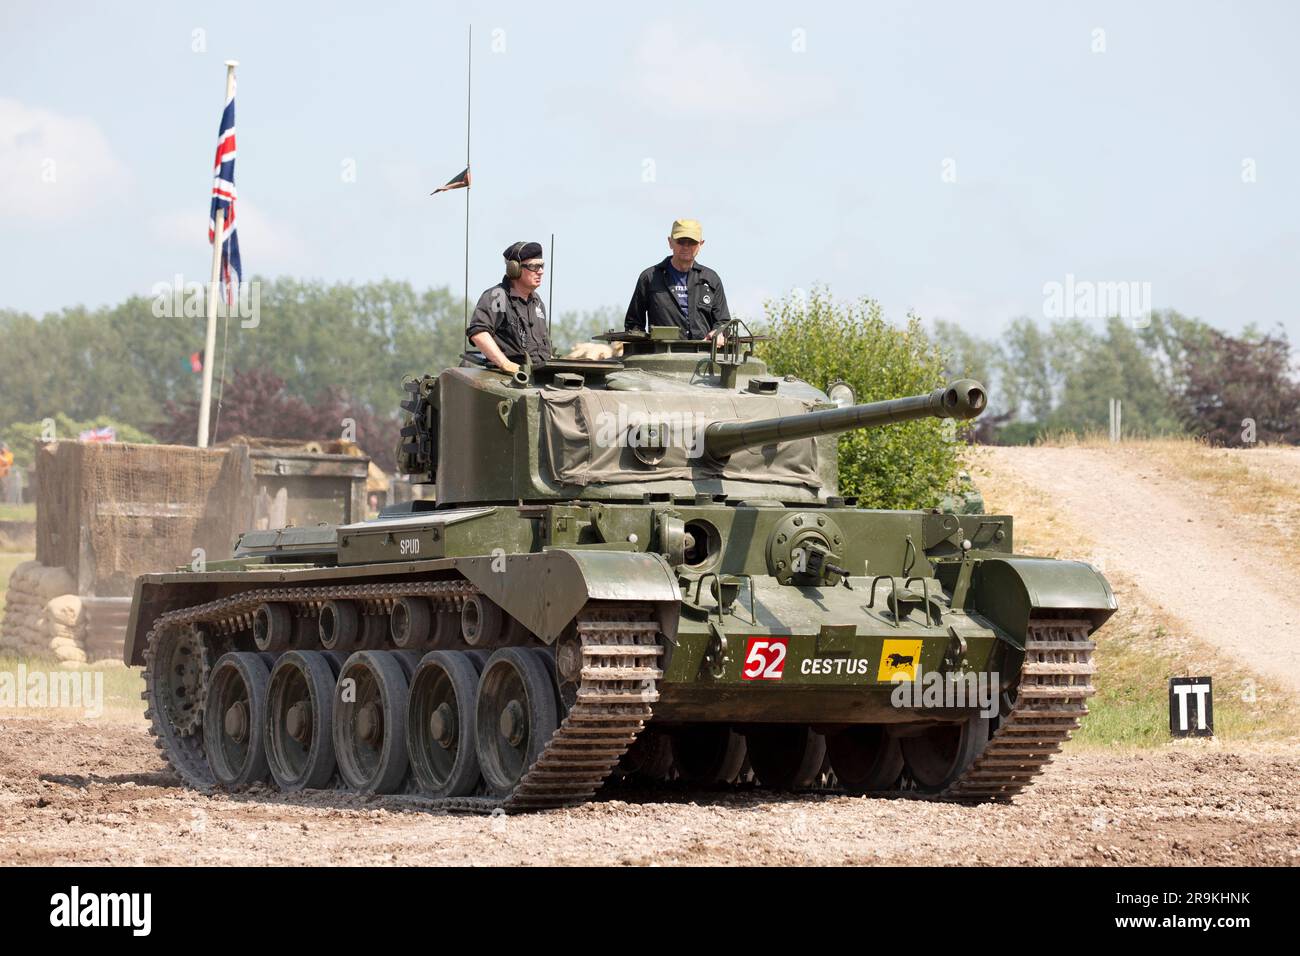 Cometa A34) Tanque británico introducido hacia el final de la Segunda Guerra Mundial. Tankfeast 23, Bovington, Reino Unido Foto de stock